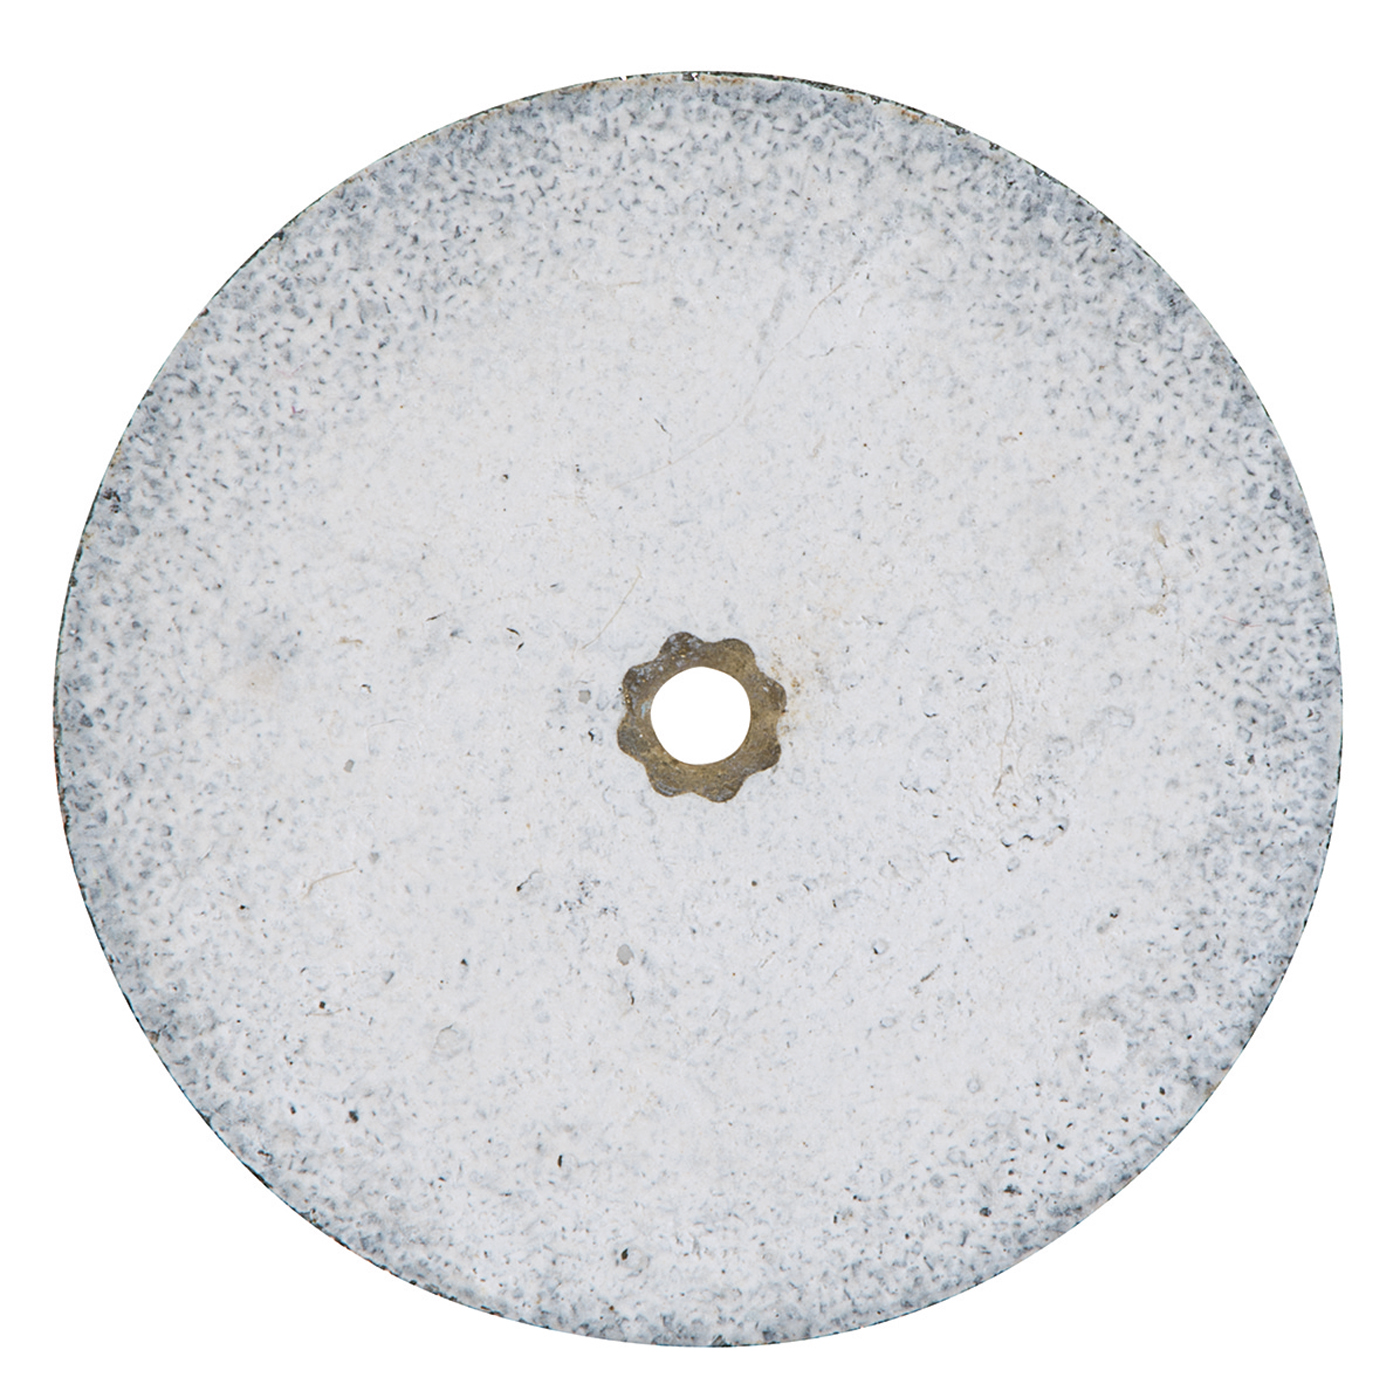 Heatless Grinding Discs, ø 25 x 5 mm - 50 pieces